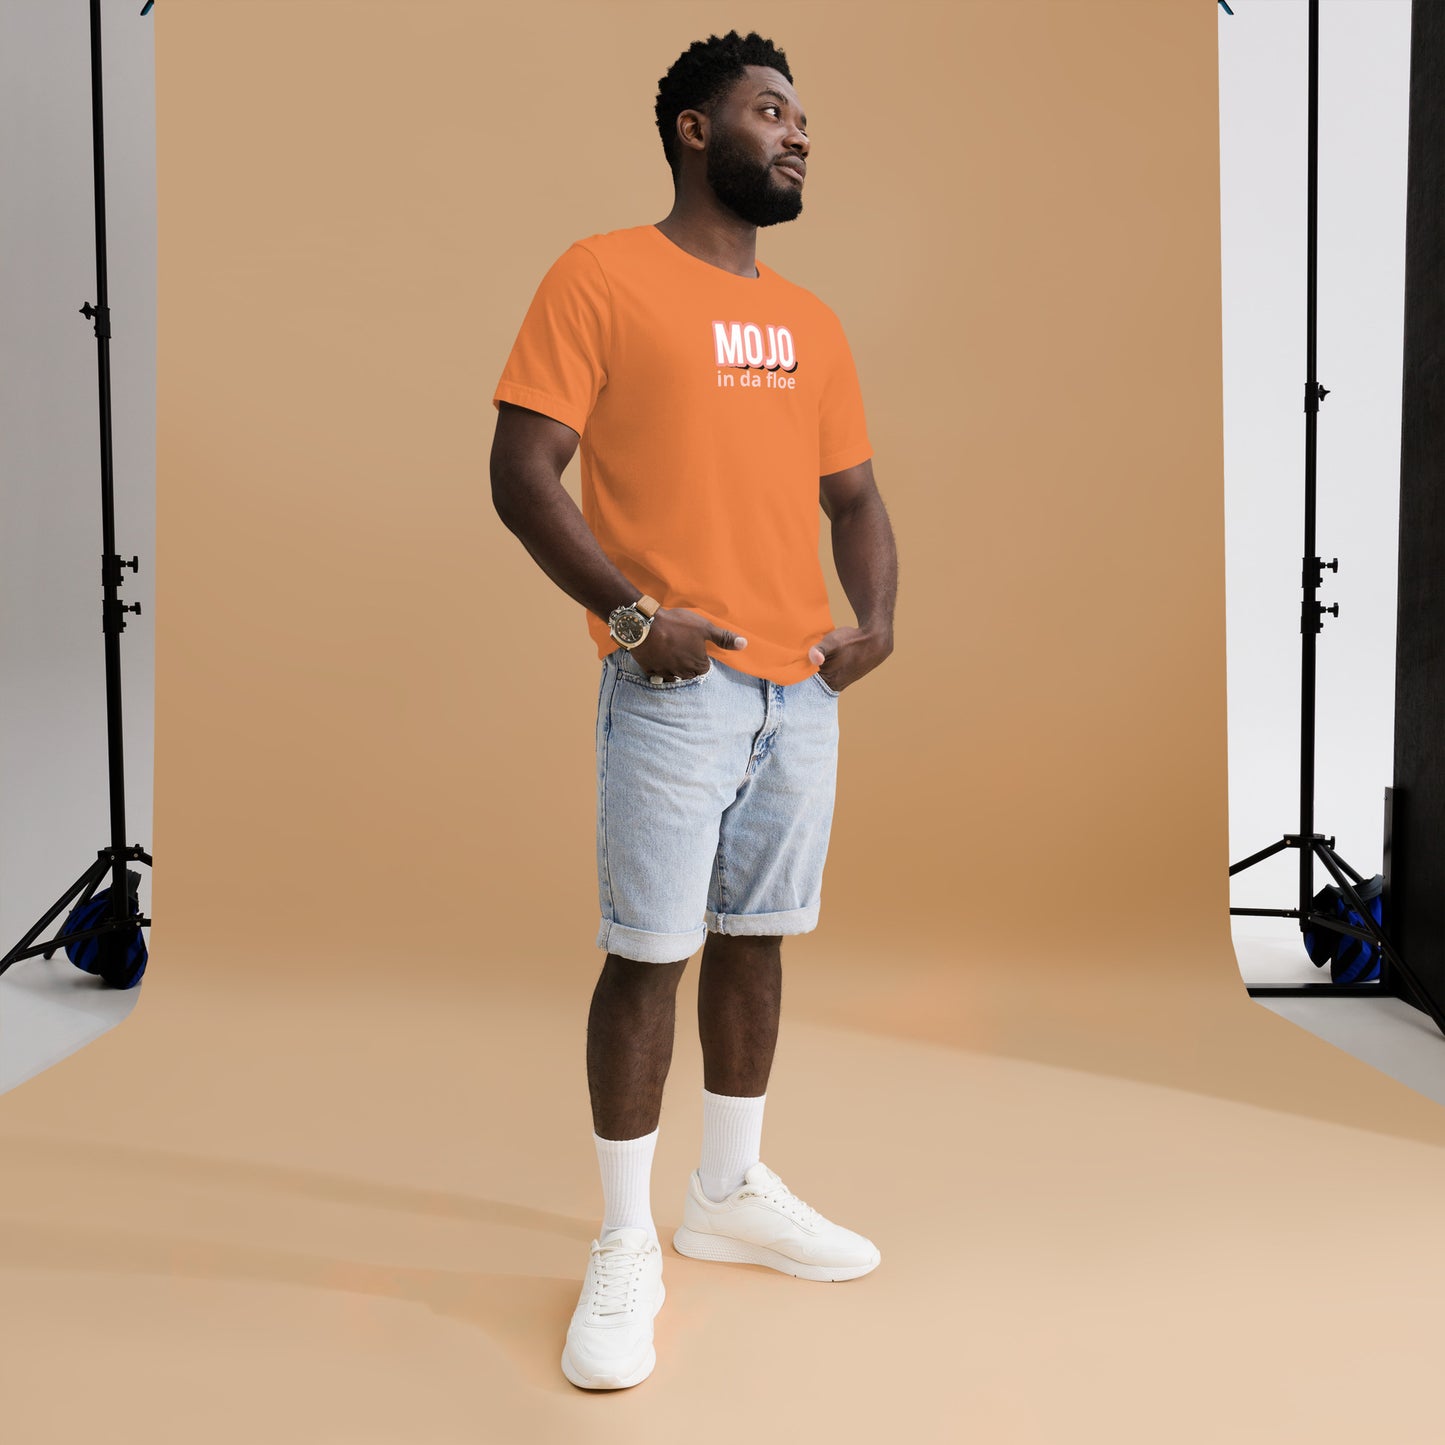 Motivate Merch Mojo in da floe Burnt Orange T-Shirt for the Male Artist